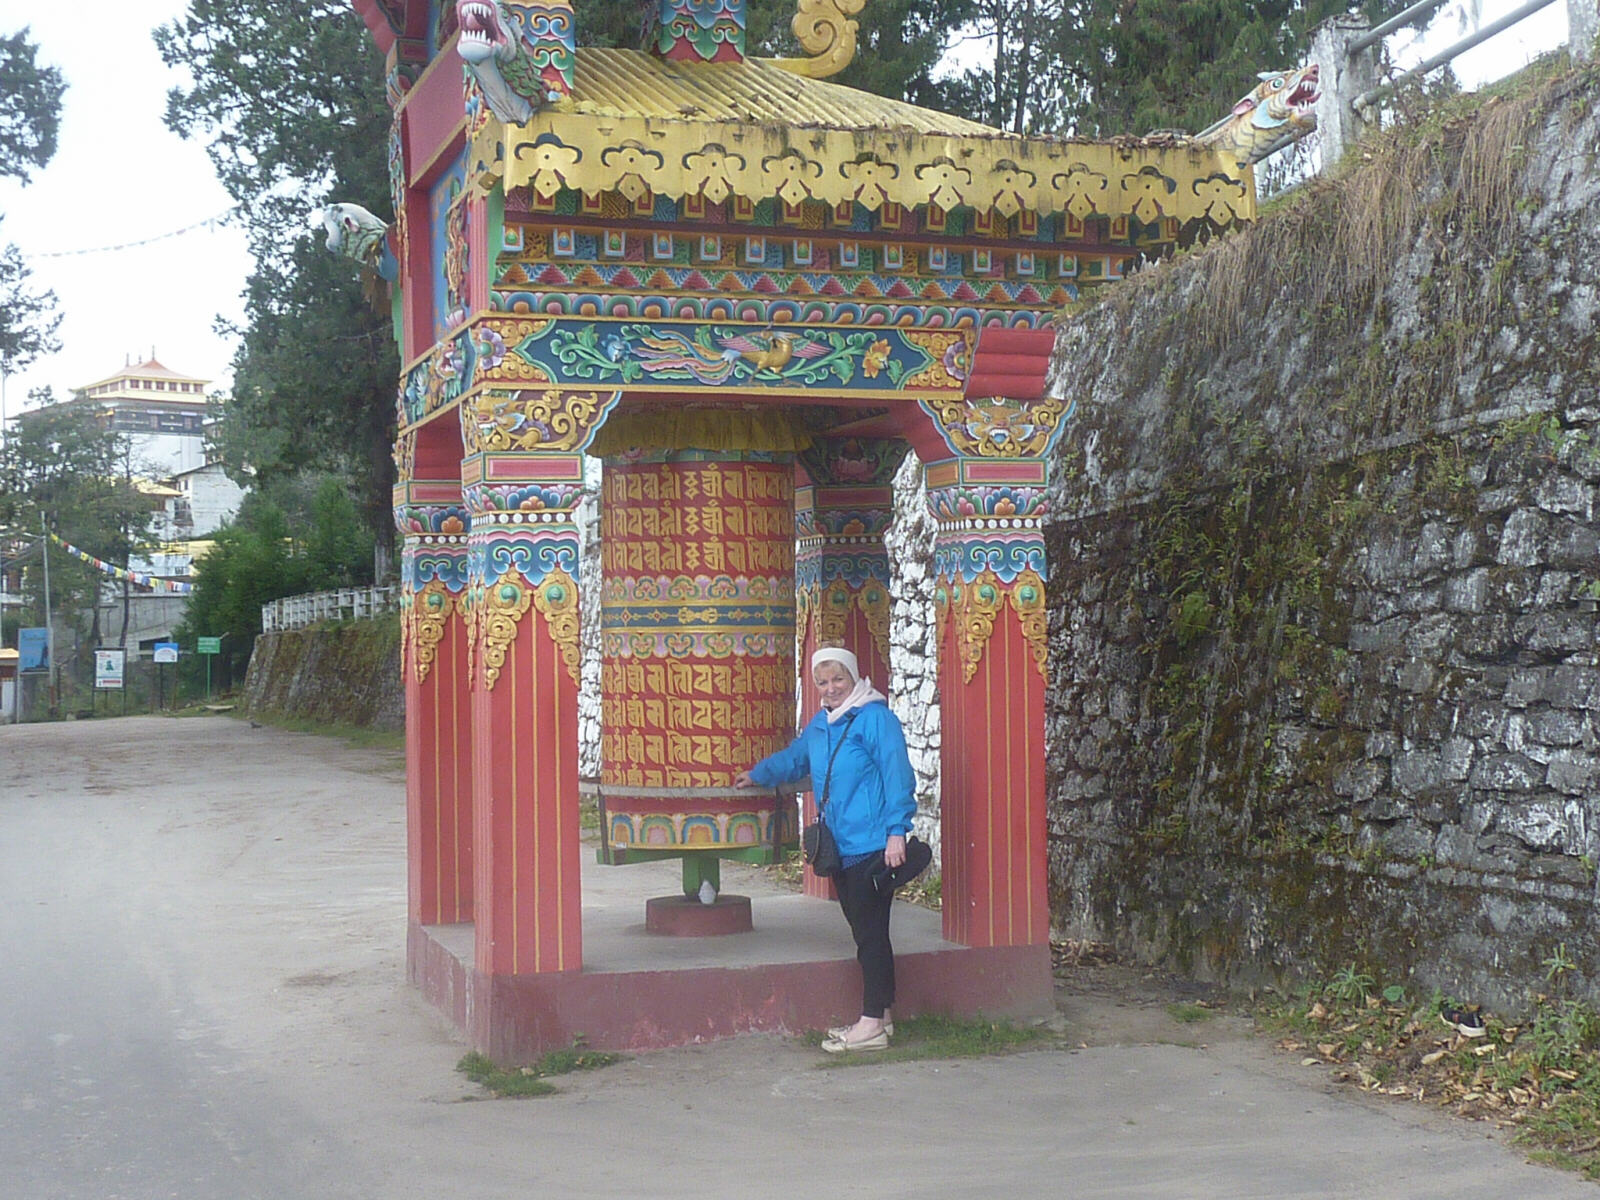 The prayer wheel at the entrance to Tawang Gompa (monastery)